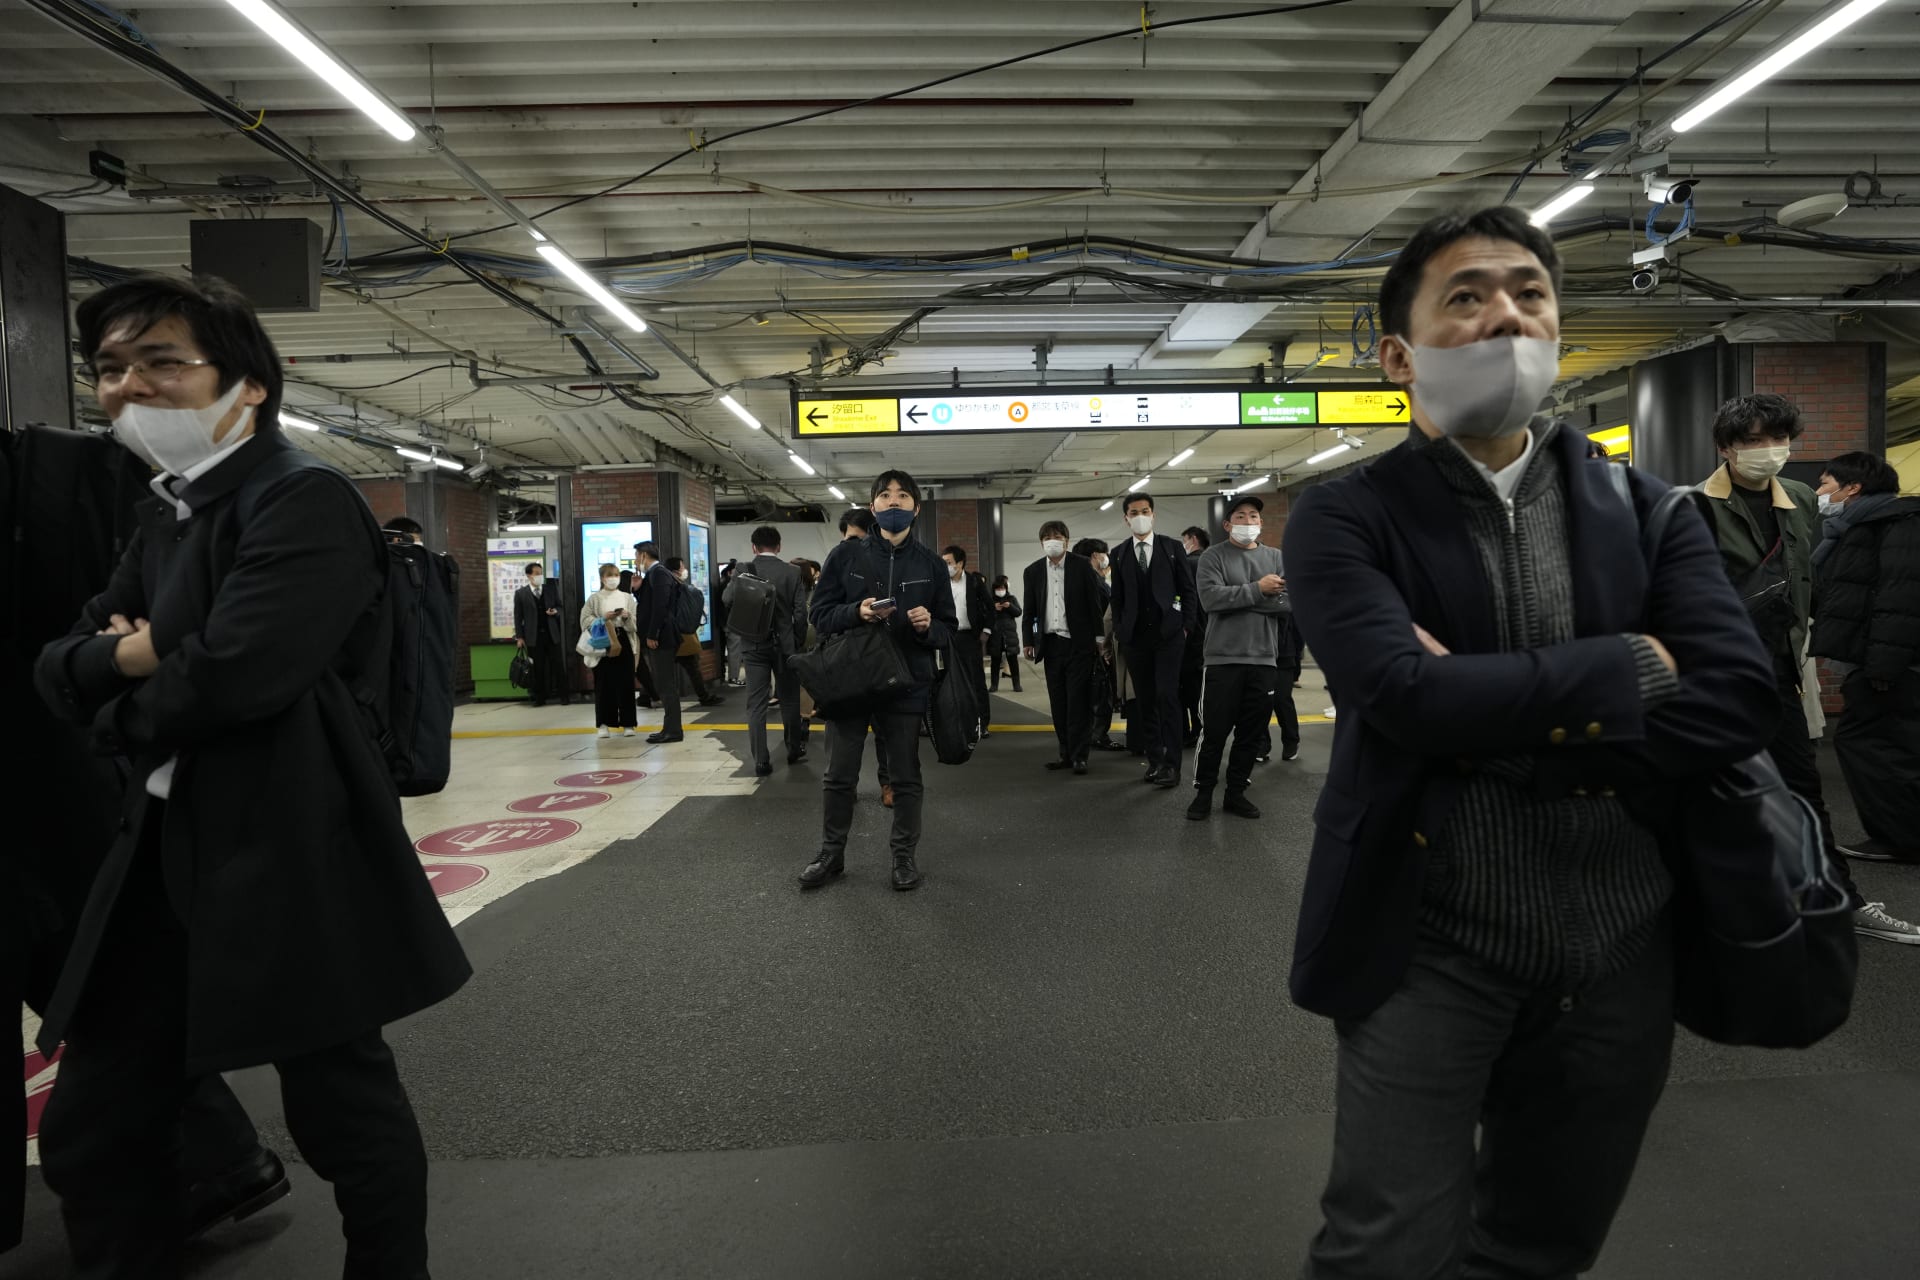 V Tokiu se lidé běželi skrýt do metra.